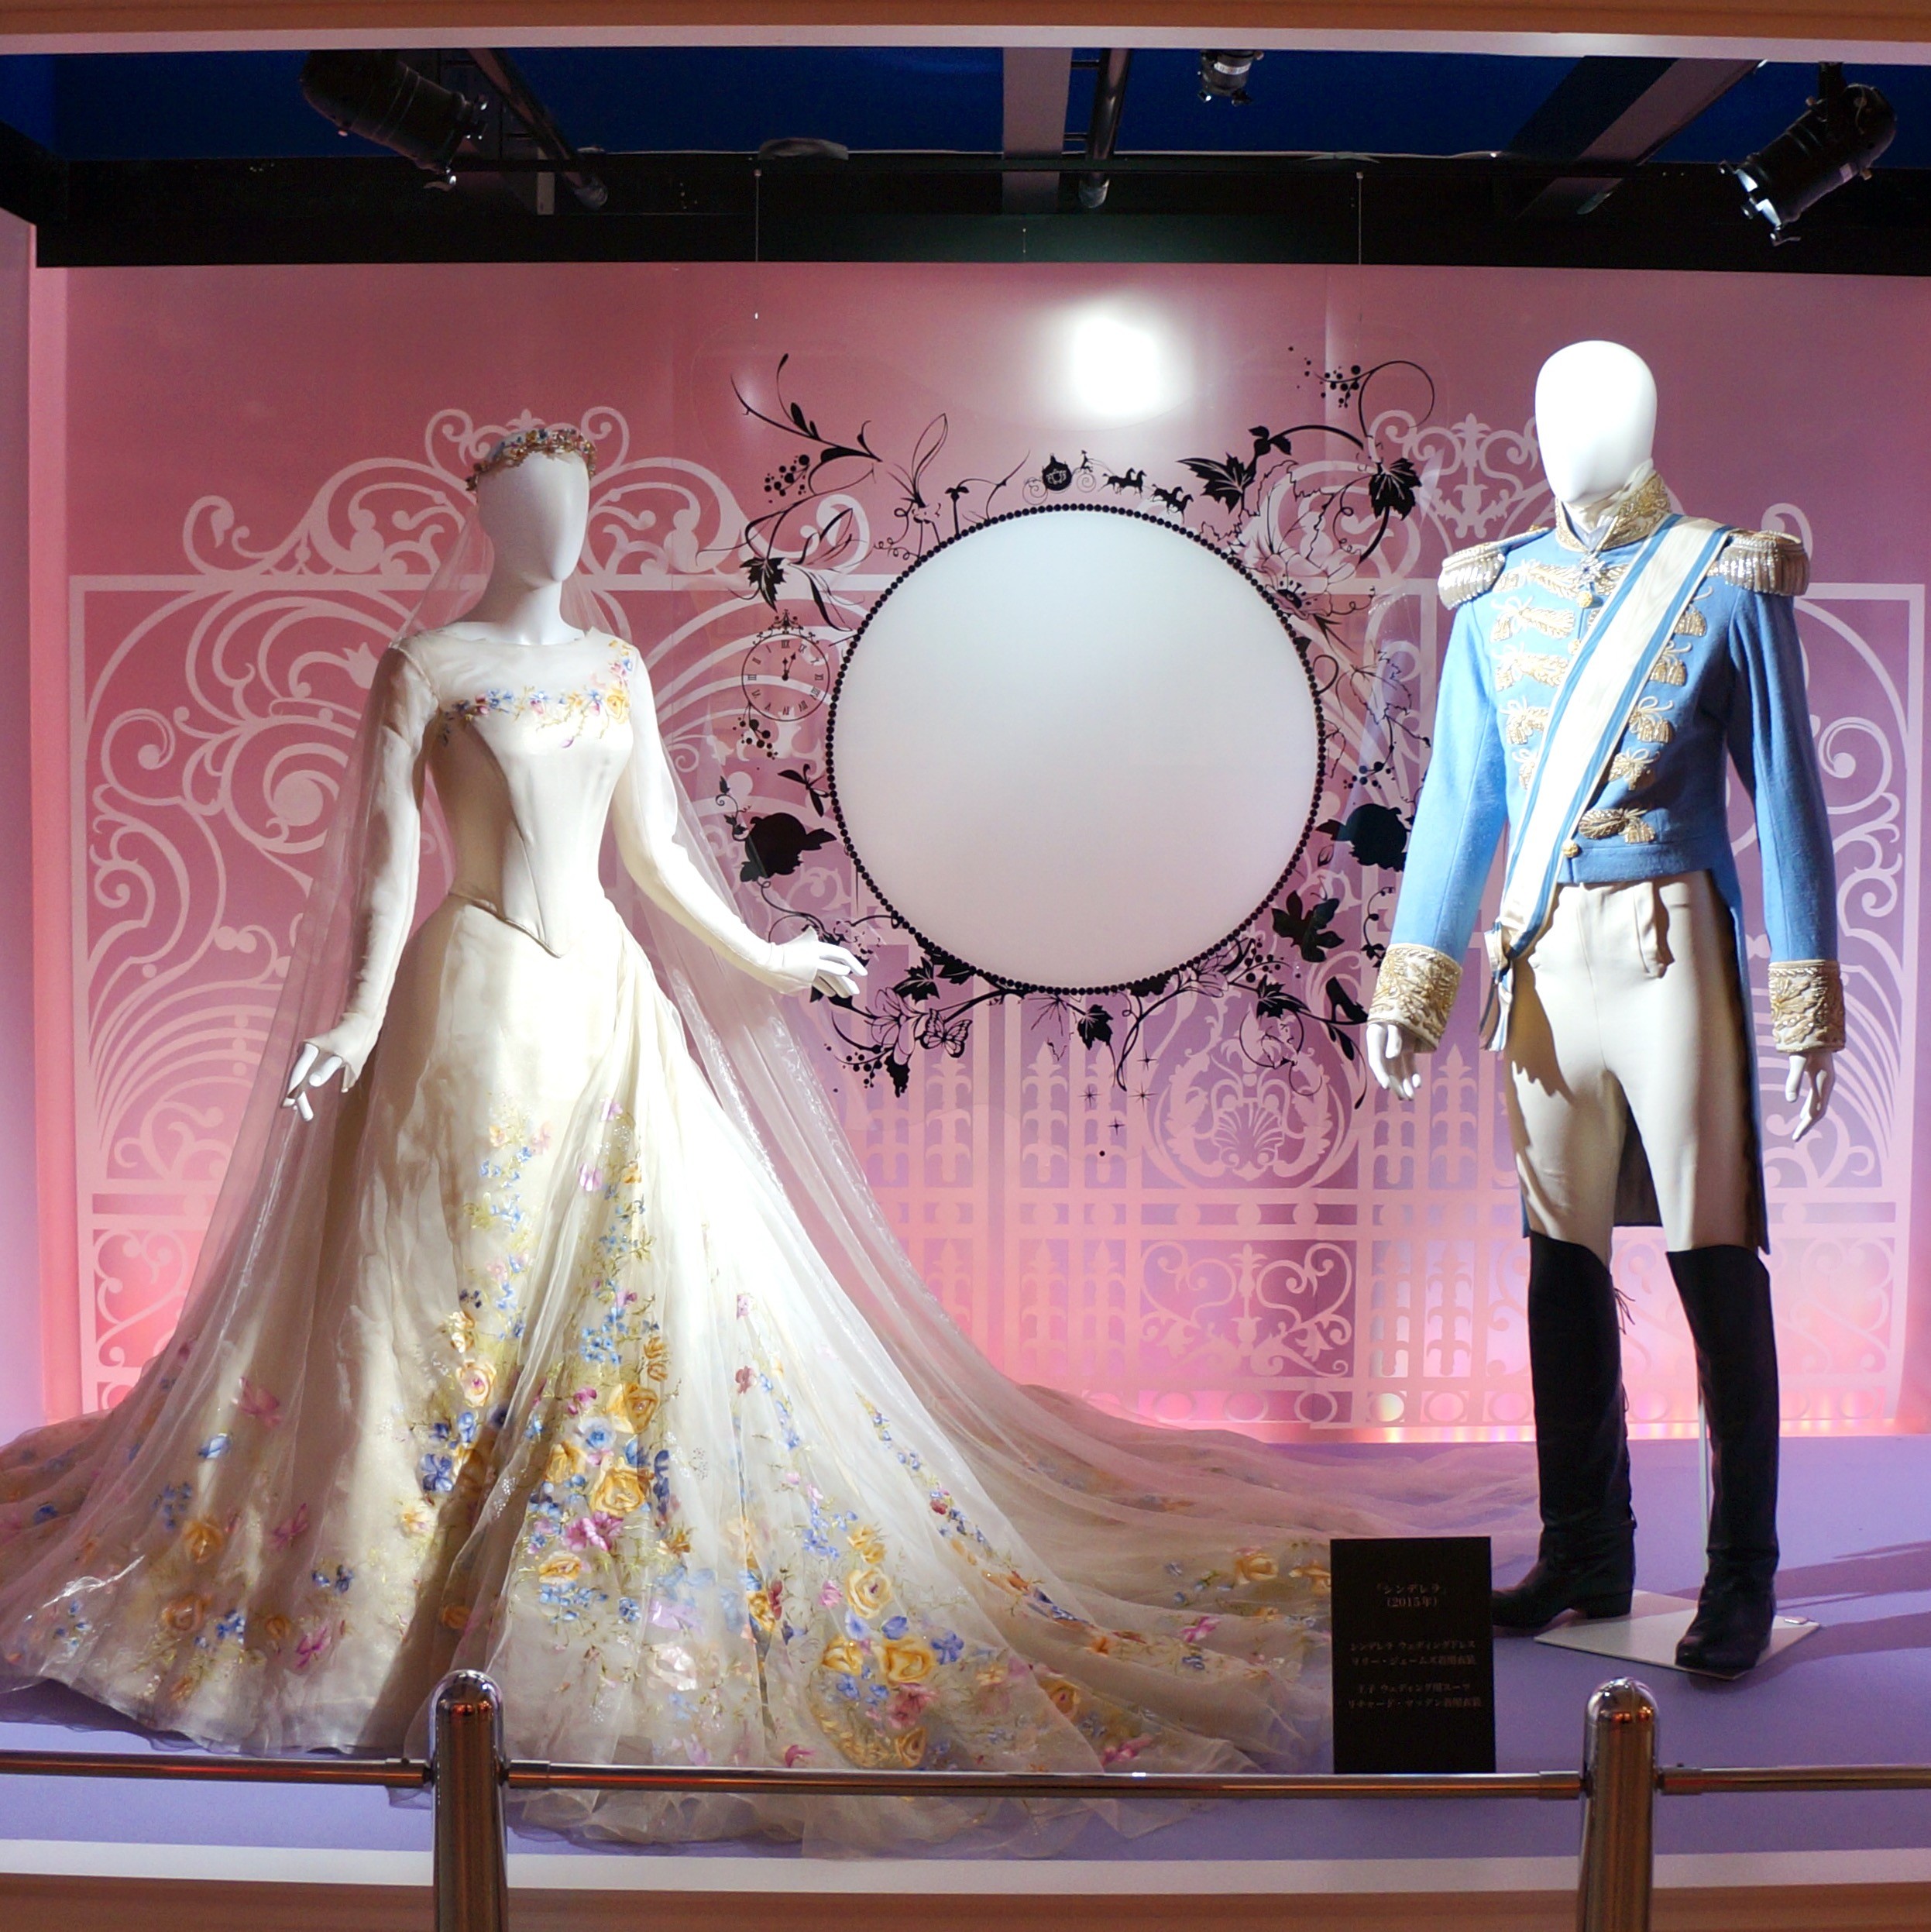 福岡県立美術館で ディズニープリンセスとアナと雪の女王展 ガラスの靴 アンジェリーナさんの衣装 特別映像シアターも フクオカーノ